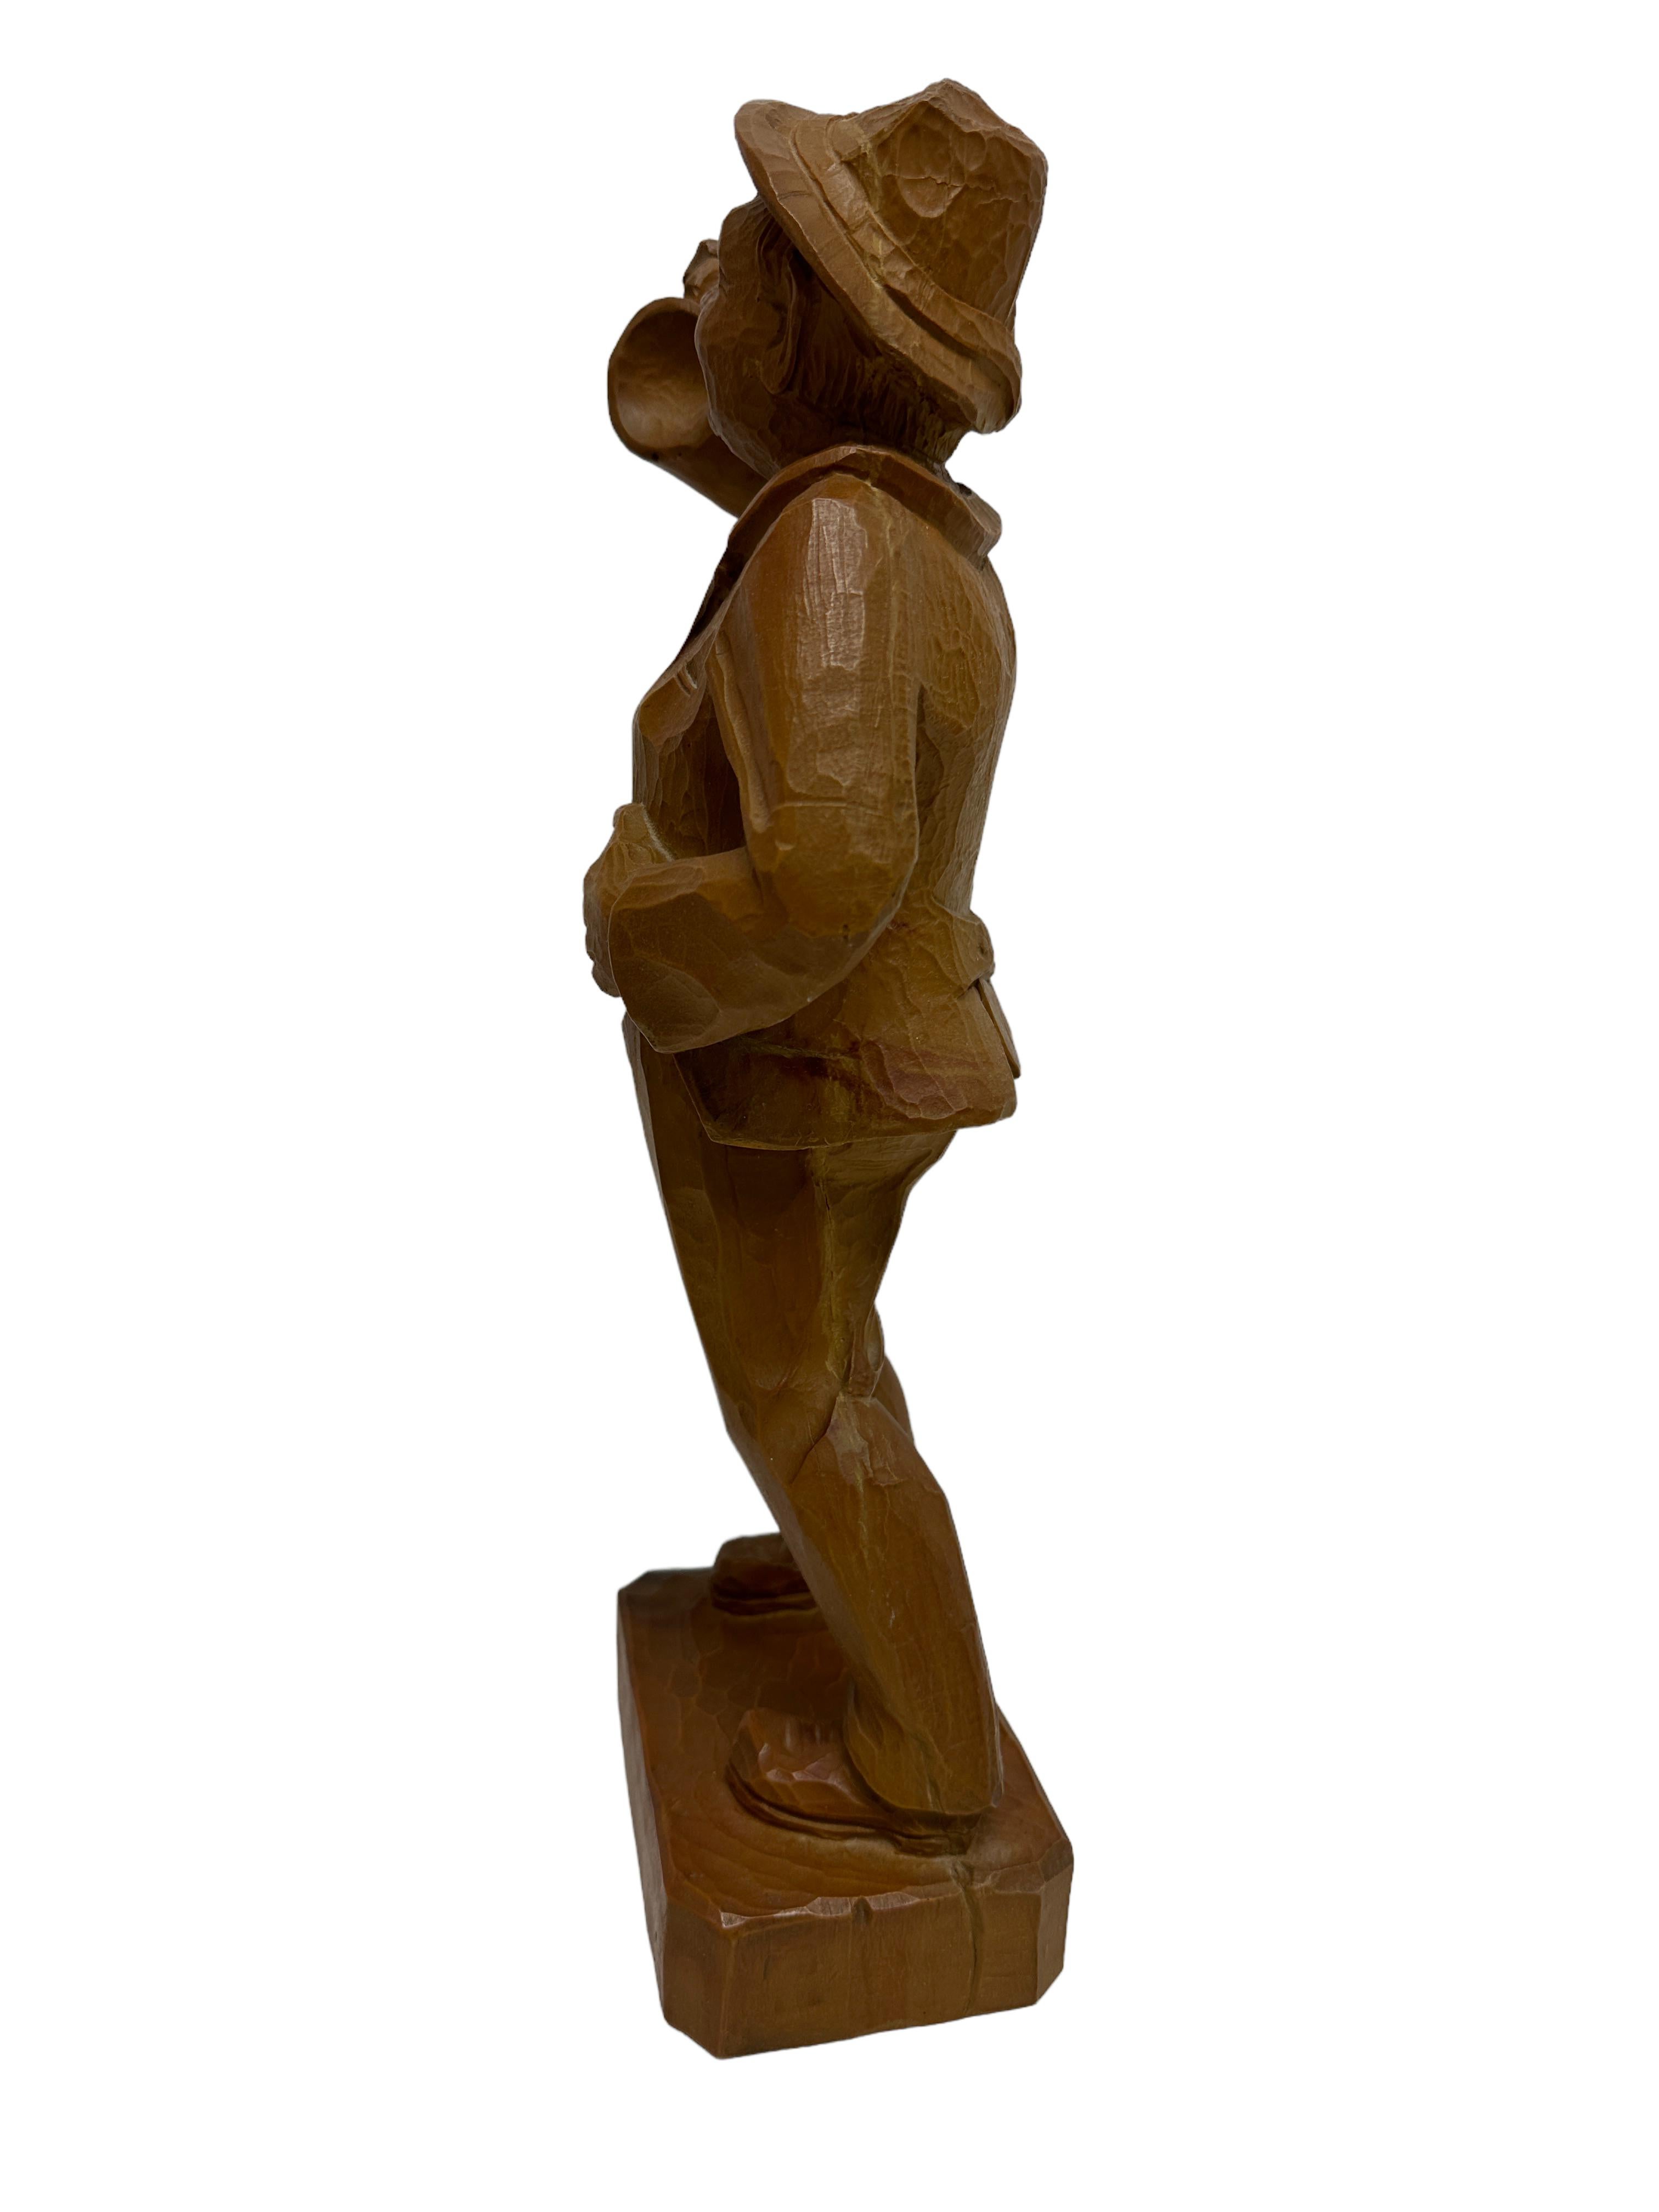 Sculpture en pin représentant un homme buvant de la bière, Autriche, 20e siècle. Il tient sa chope d'une main et redresse sa veste de l'autre. Avec une marque de fabrication à la base. Trouvé dans une vente de succession à Vienne, en Autriche. Il